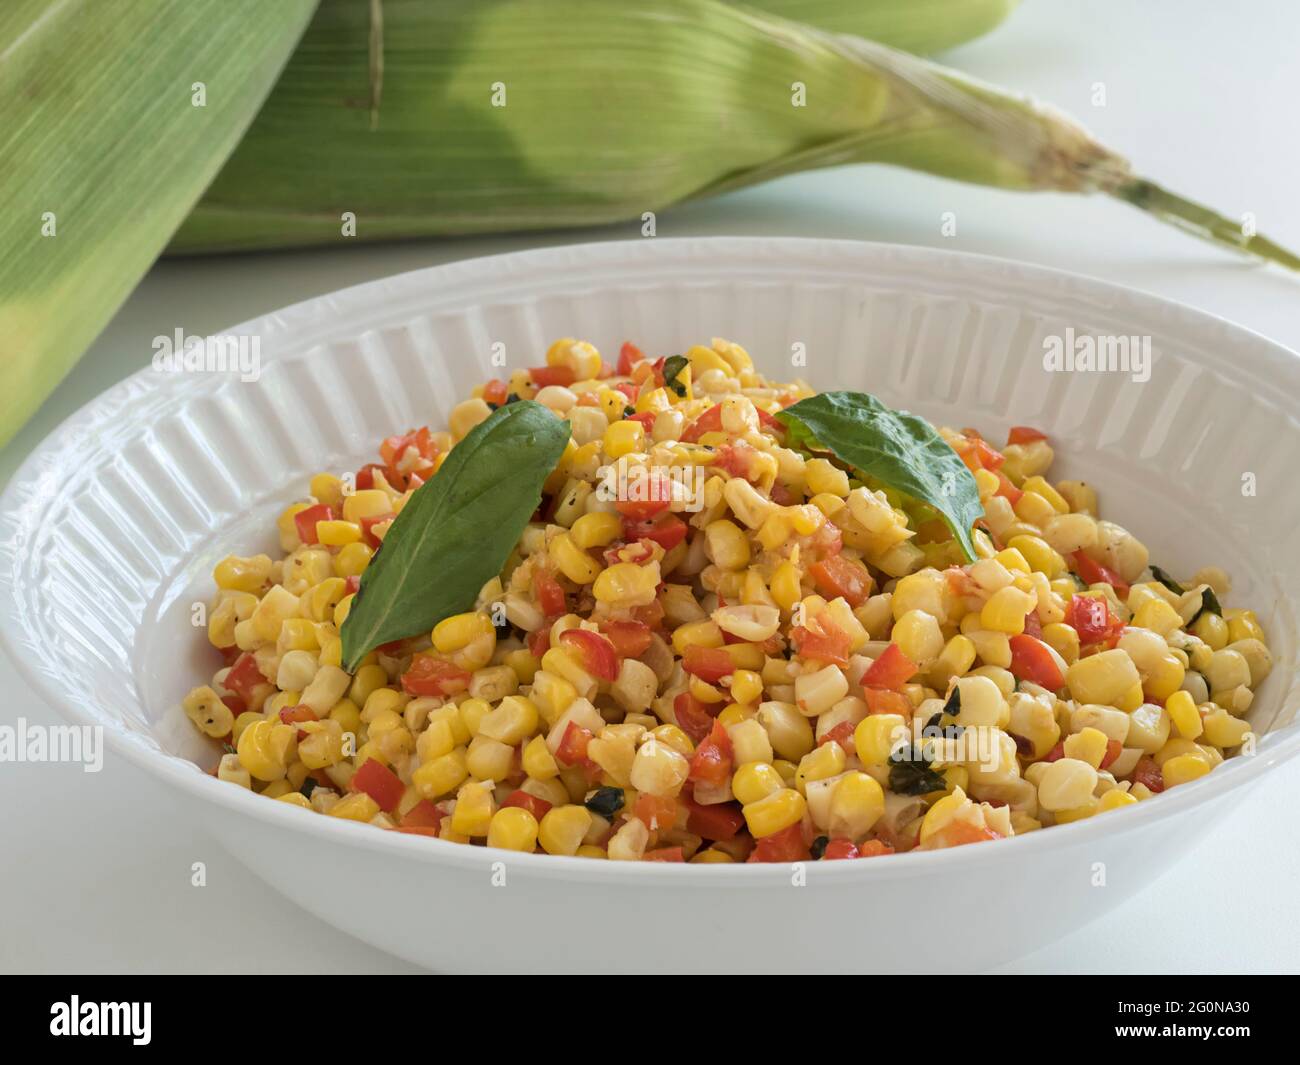 Un bol de service blanc contenant un plat d'accompagnement de maïs et de poivron rouge coloré se trouve sur une table avec une pile d'épis de maïs non décortiqués fraîchement cueillis dans le bac Banque D'Images